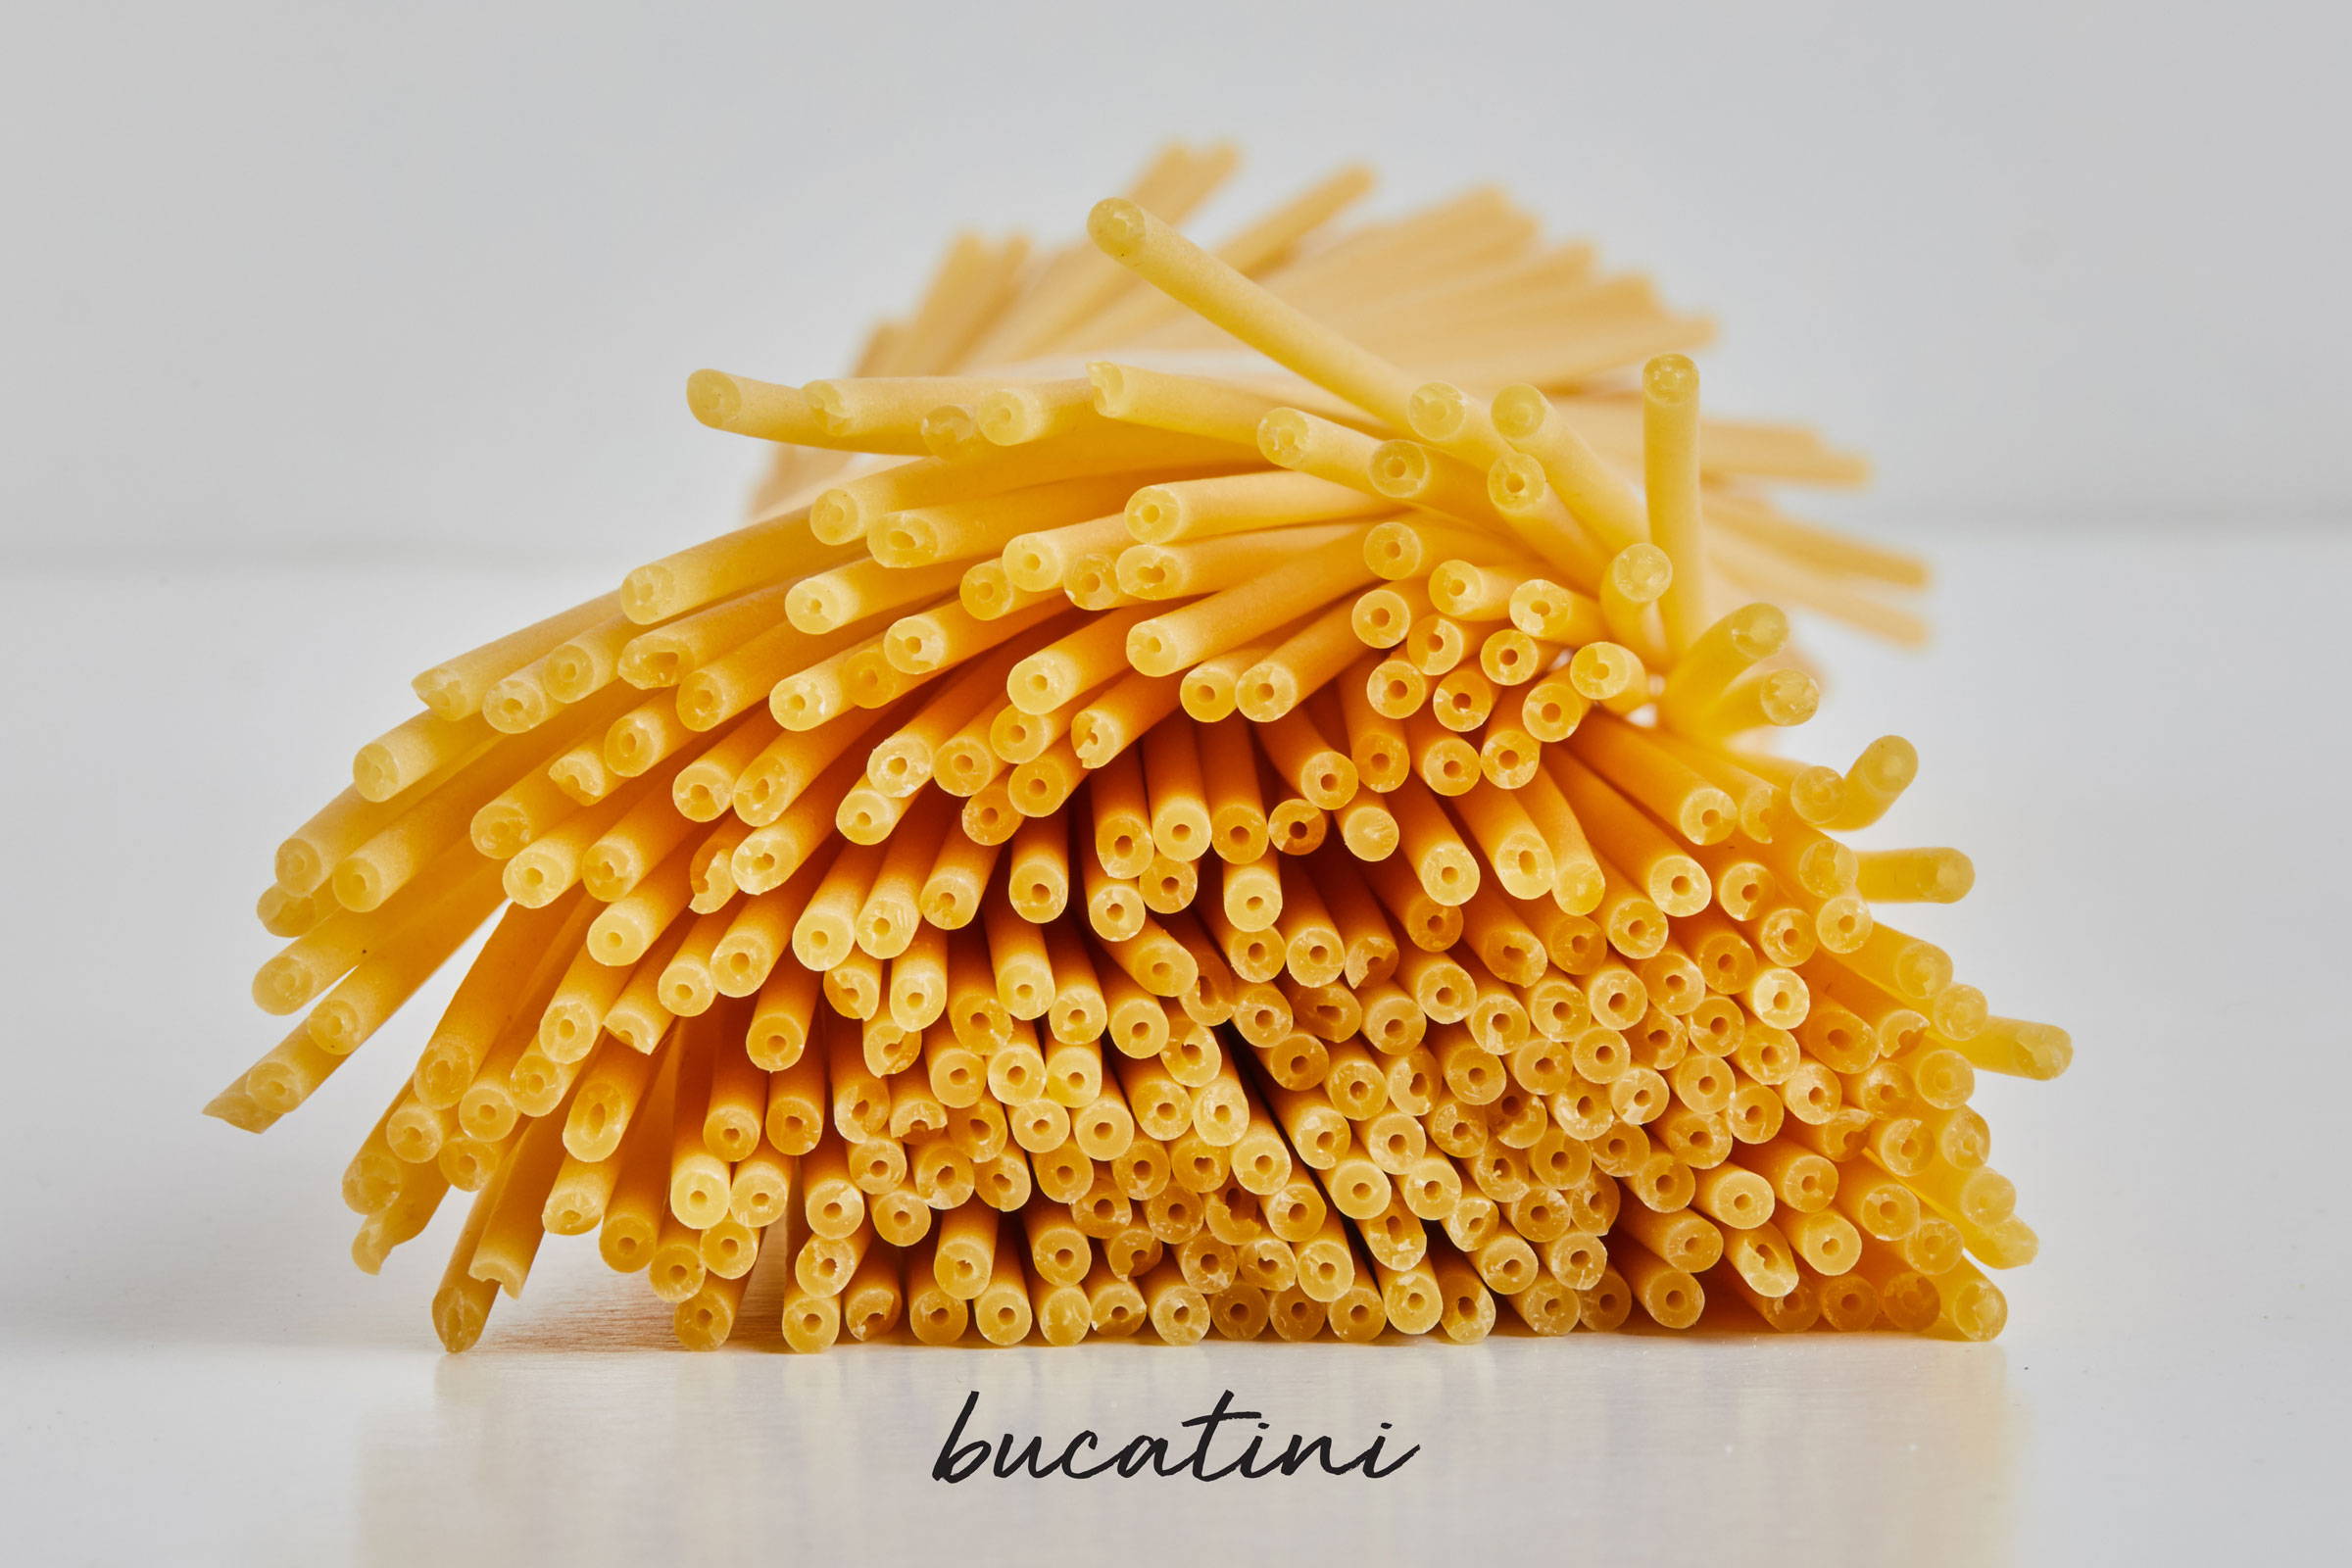 Bundle of uncooked bucatini pasta